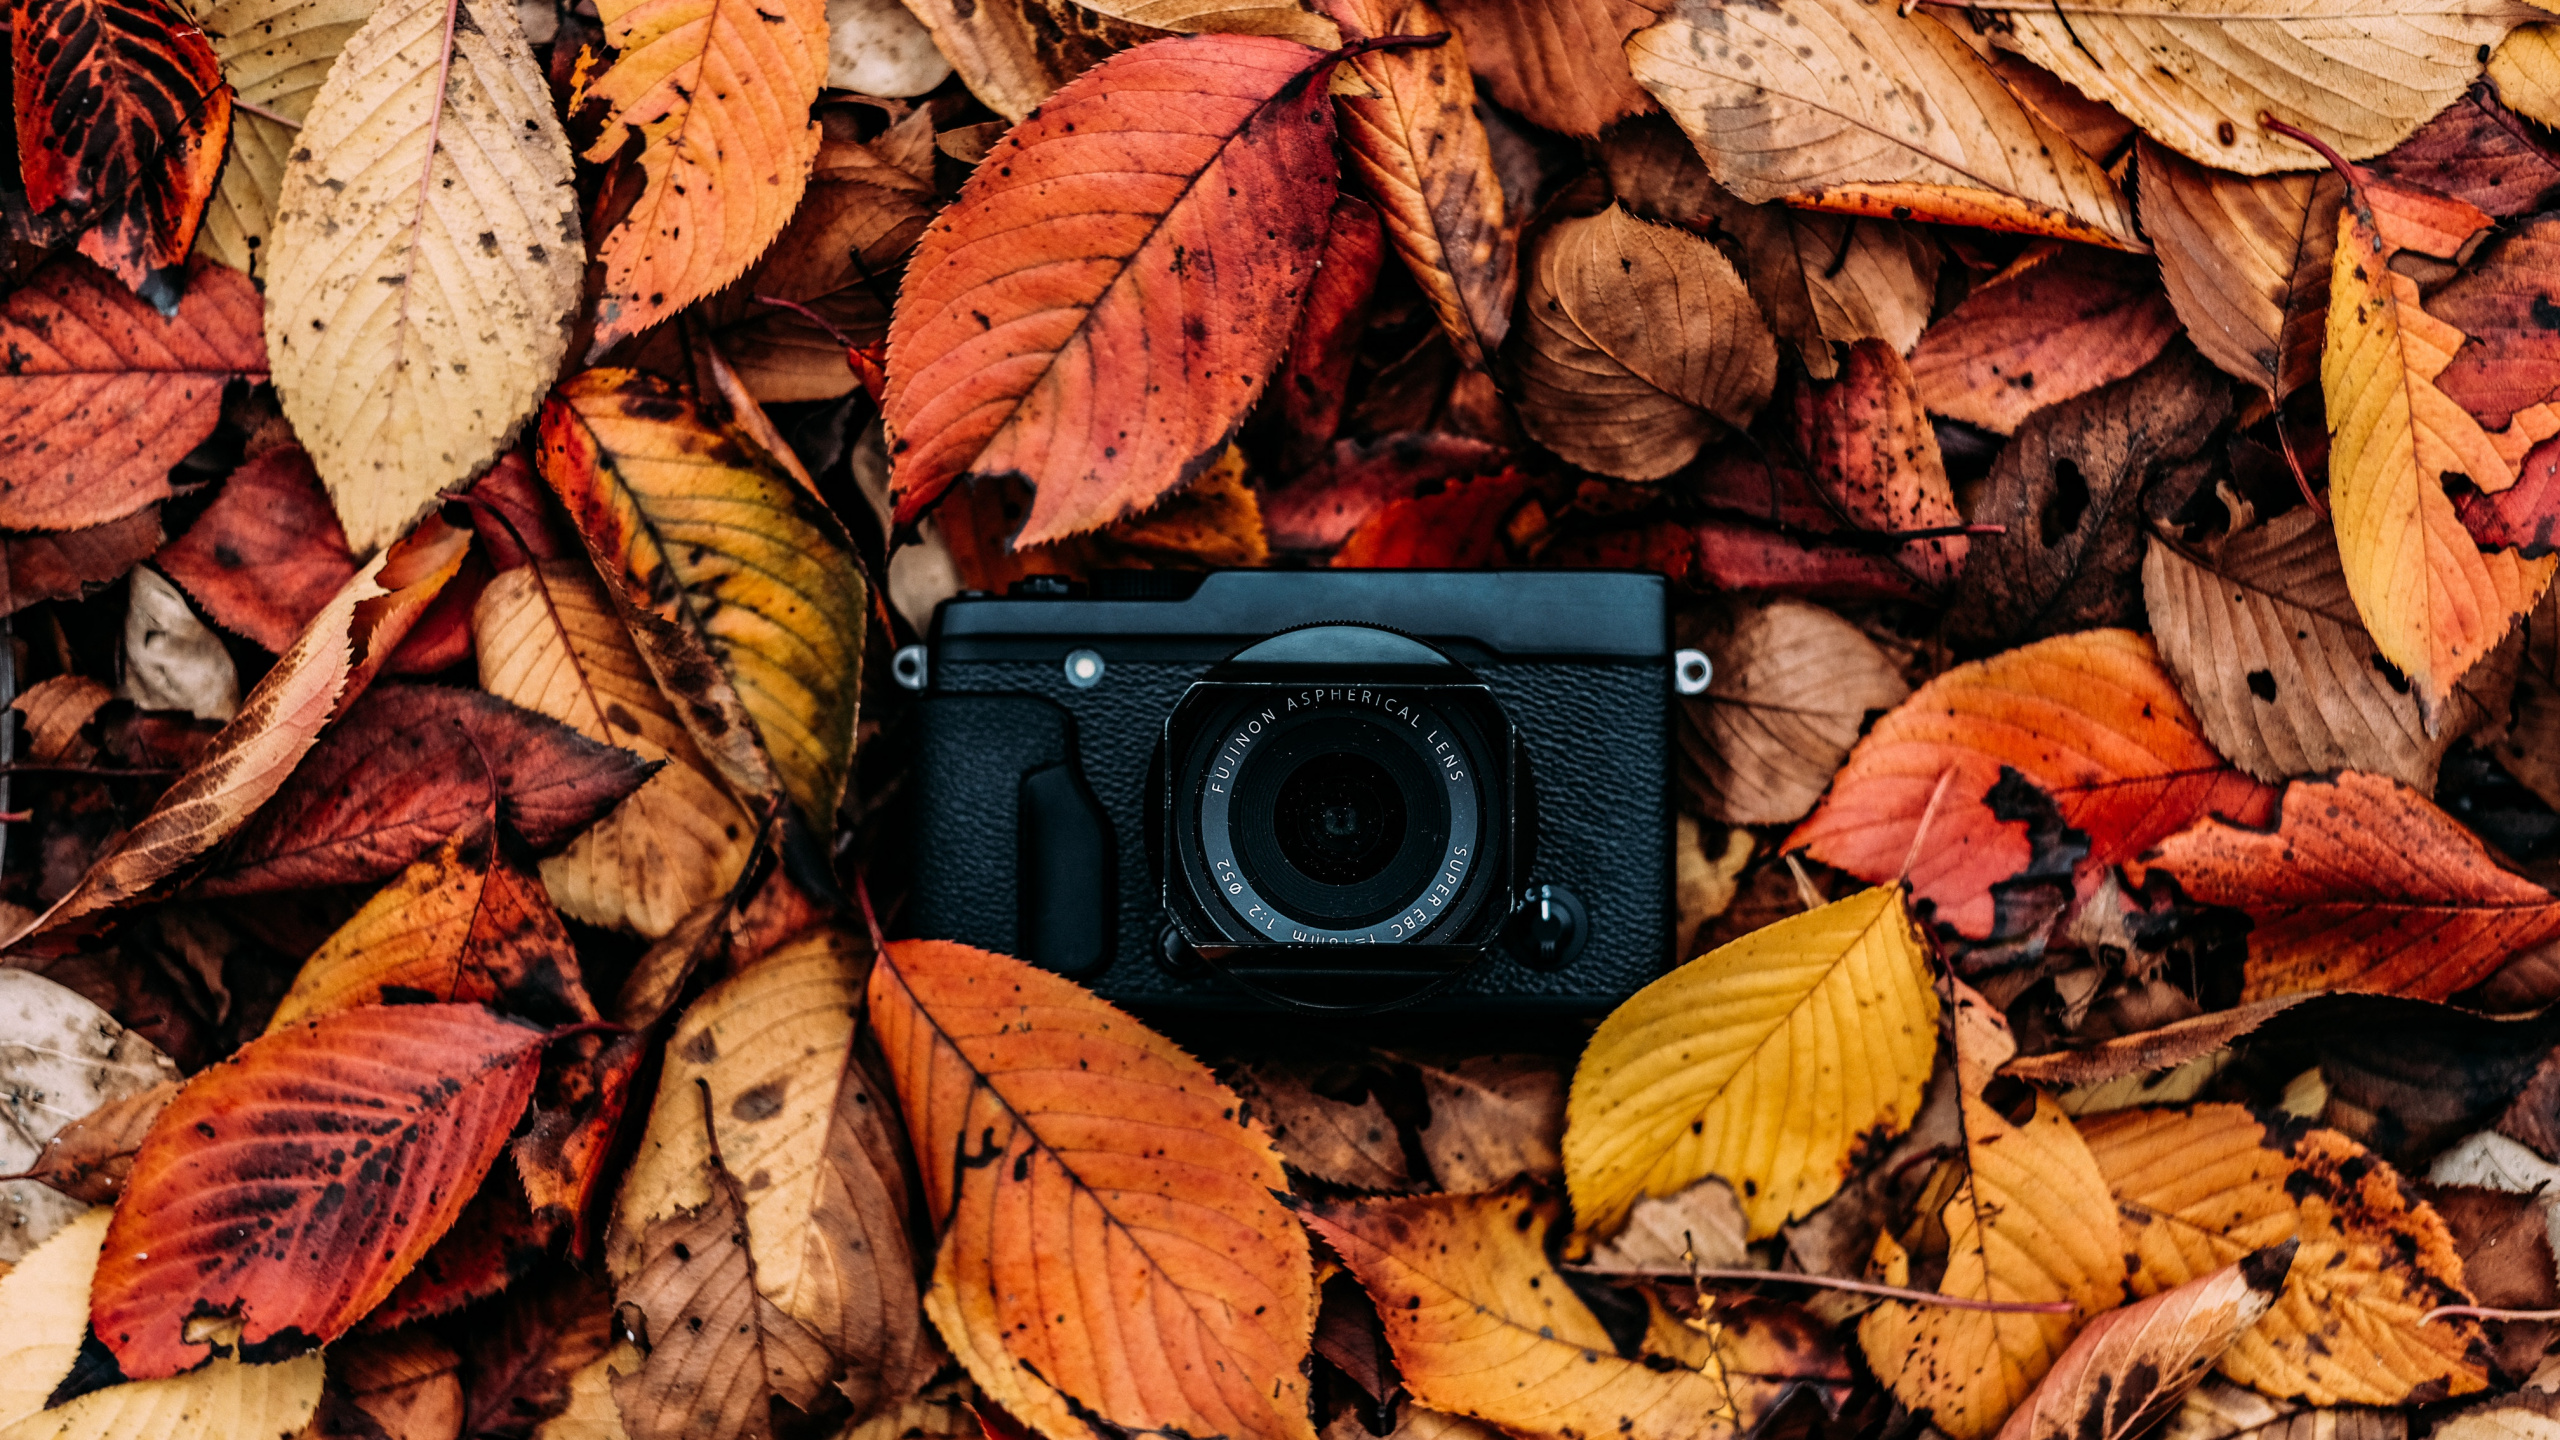 色彩, 仍然生活, 木, 秋天的叶的颜色, 光学照相机 壁纸 2560x1440 允许